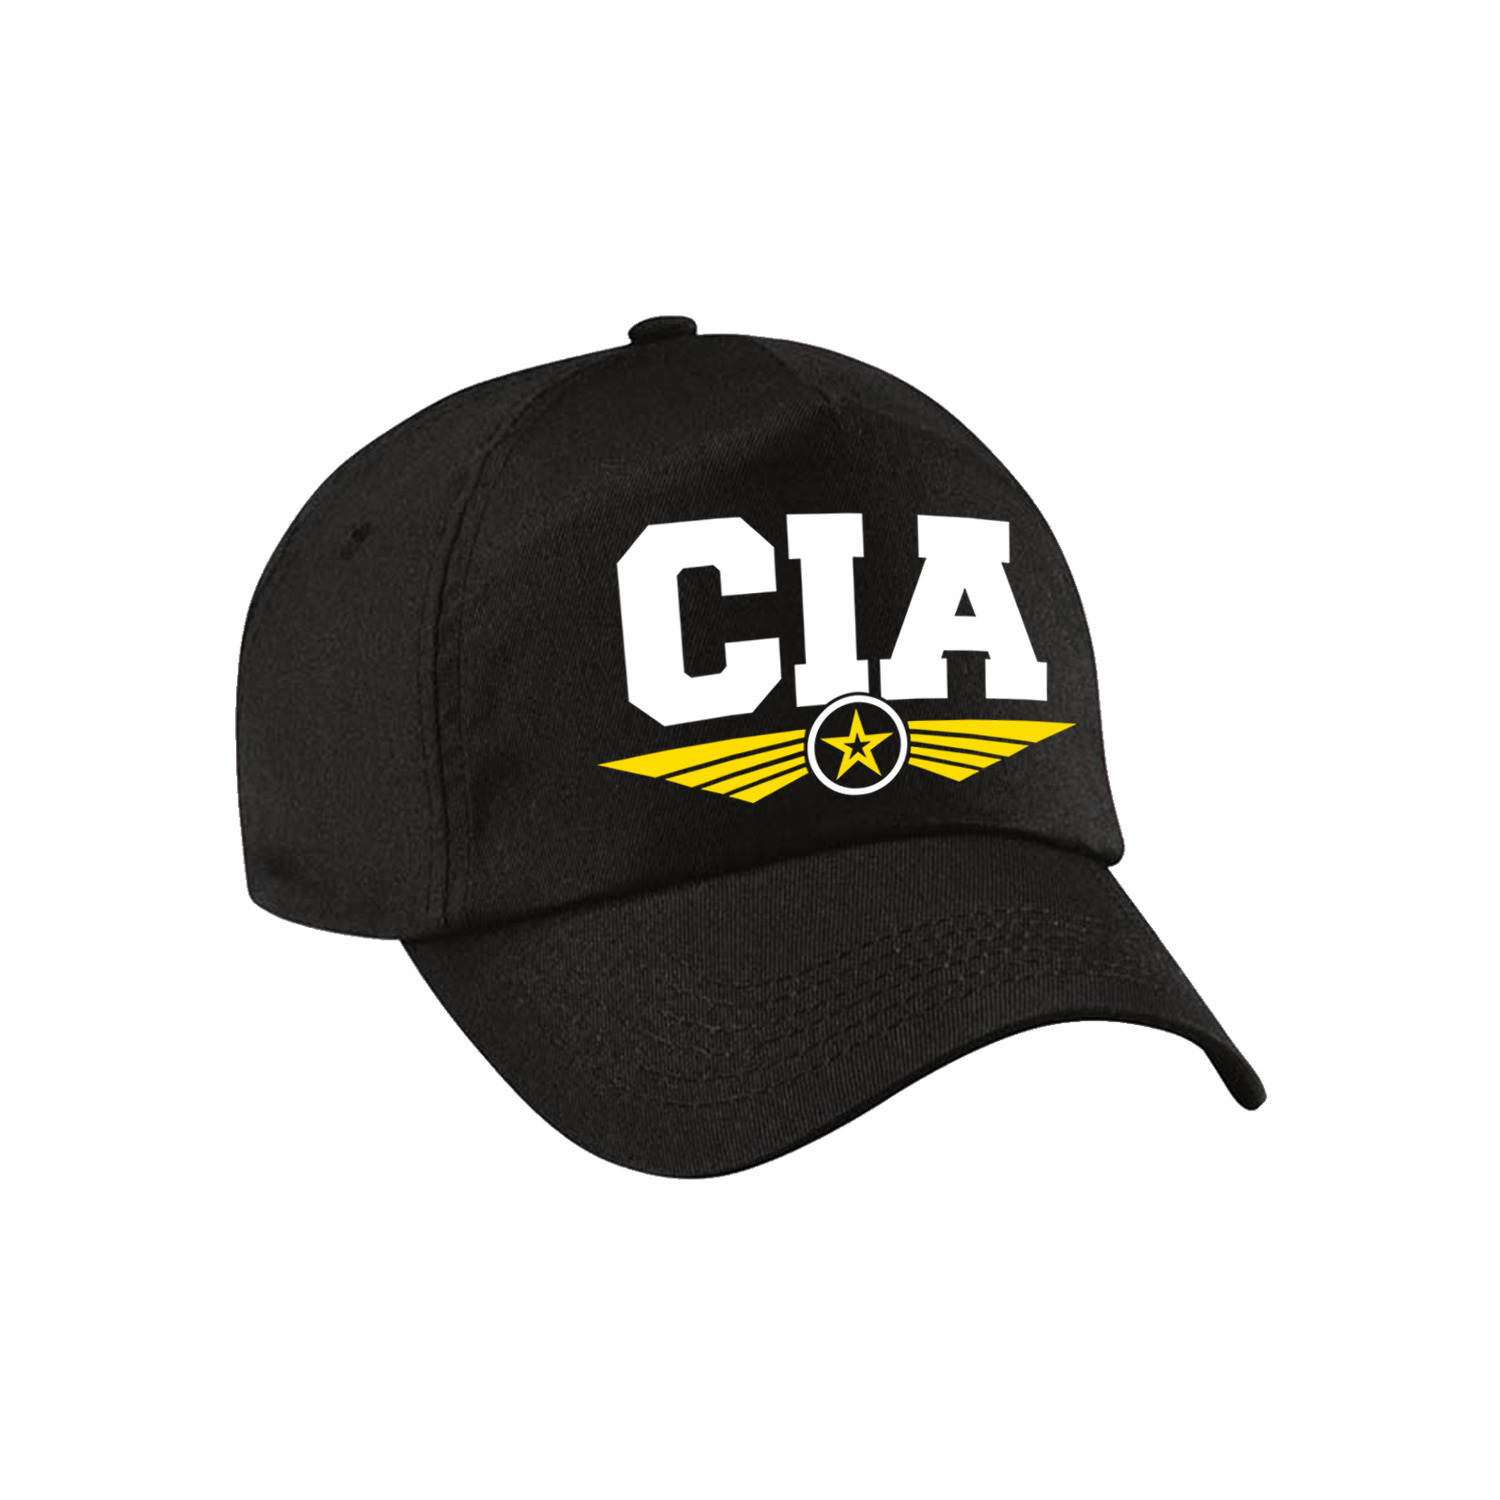 CIA agent tekst pet-baseball cap zwart voor kinderen